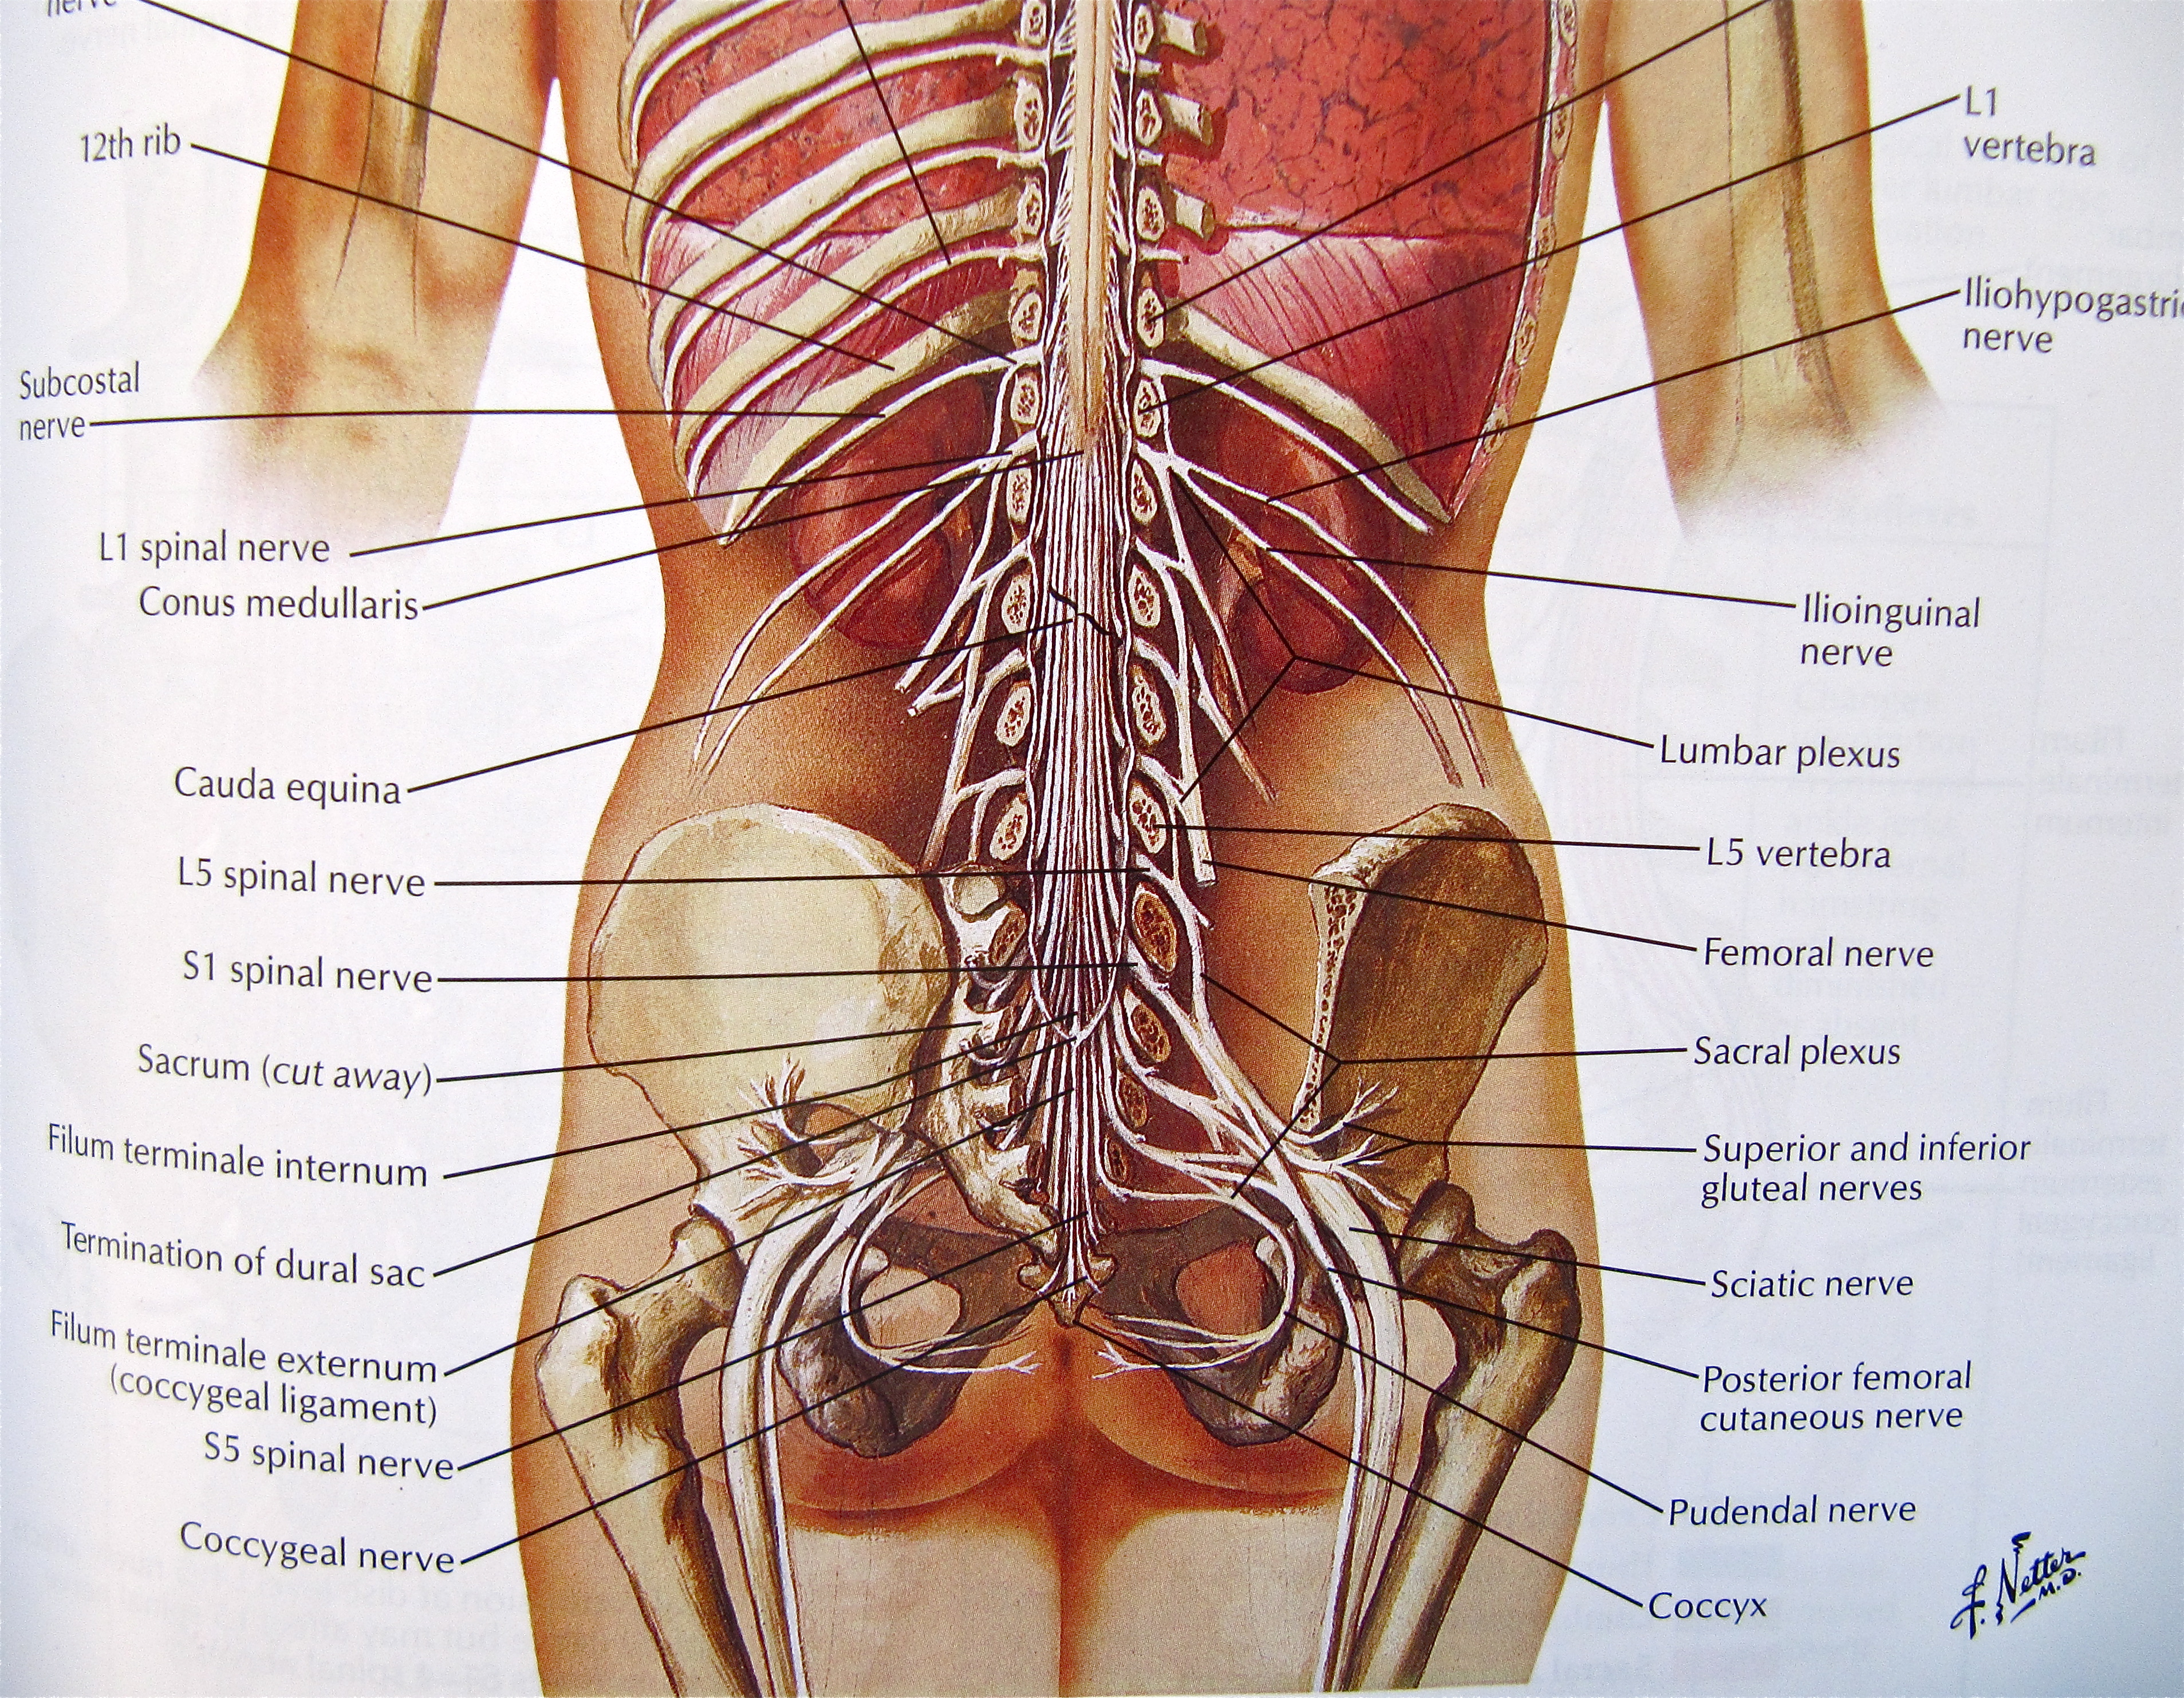 внутренние органы женщины со спины фото